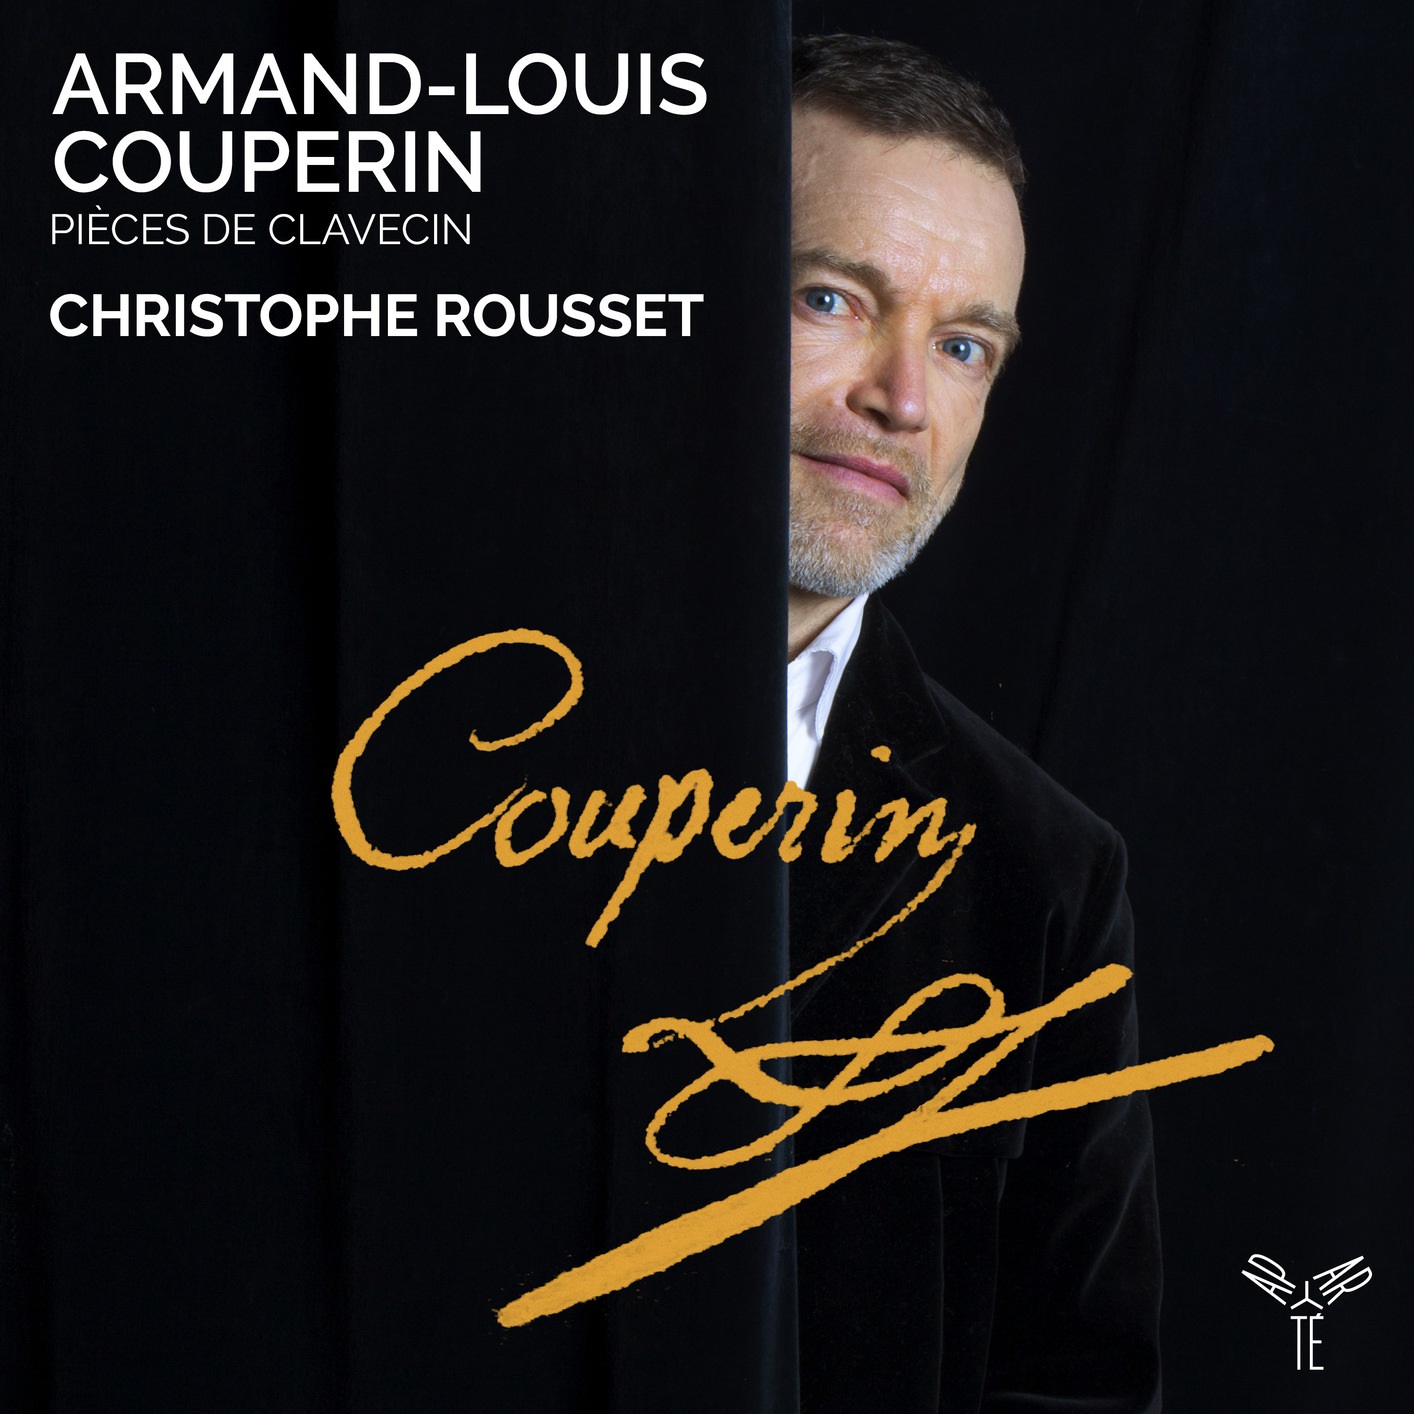 Christophe Rousset – Armand-Louis Couperin: Pieces de Clavecin (2020) [FLAC 24bit/96kHz]